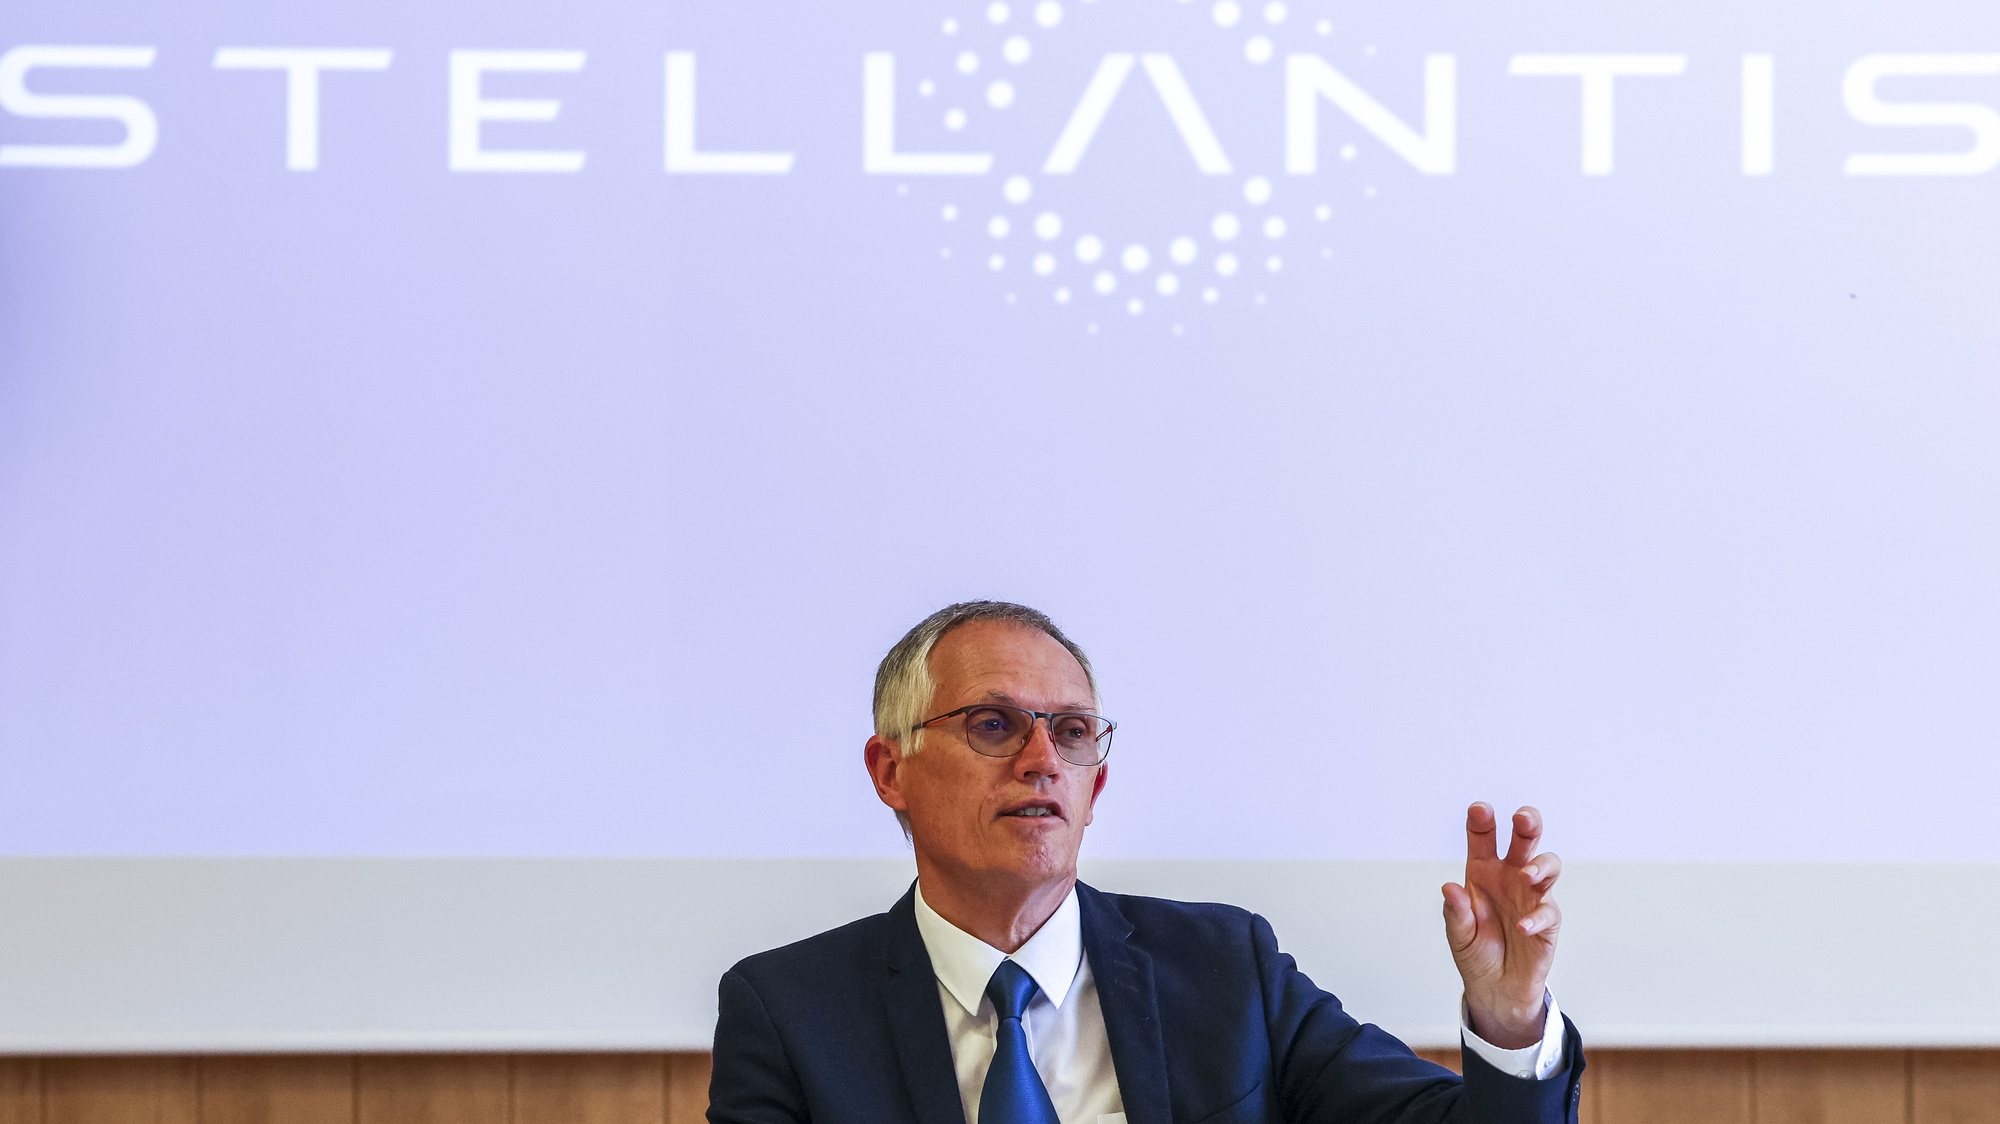 O CEO da Stellantis, Carlos Tavares fala aosm jornalistas no final da cerimónia que assinala o inicio da produção dos primeiros veículos elétricos da Stellantis e a entrega de 719 viaturas elétricas ao SNS, na Stellantis, Mangualde, 2 de julho de 2024. PAULO NOVAIS/LUSA